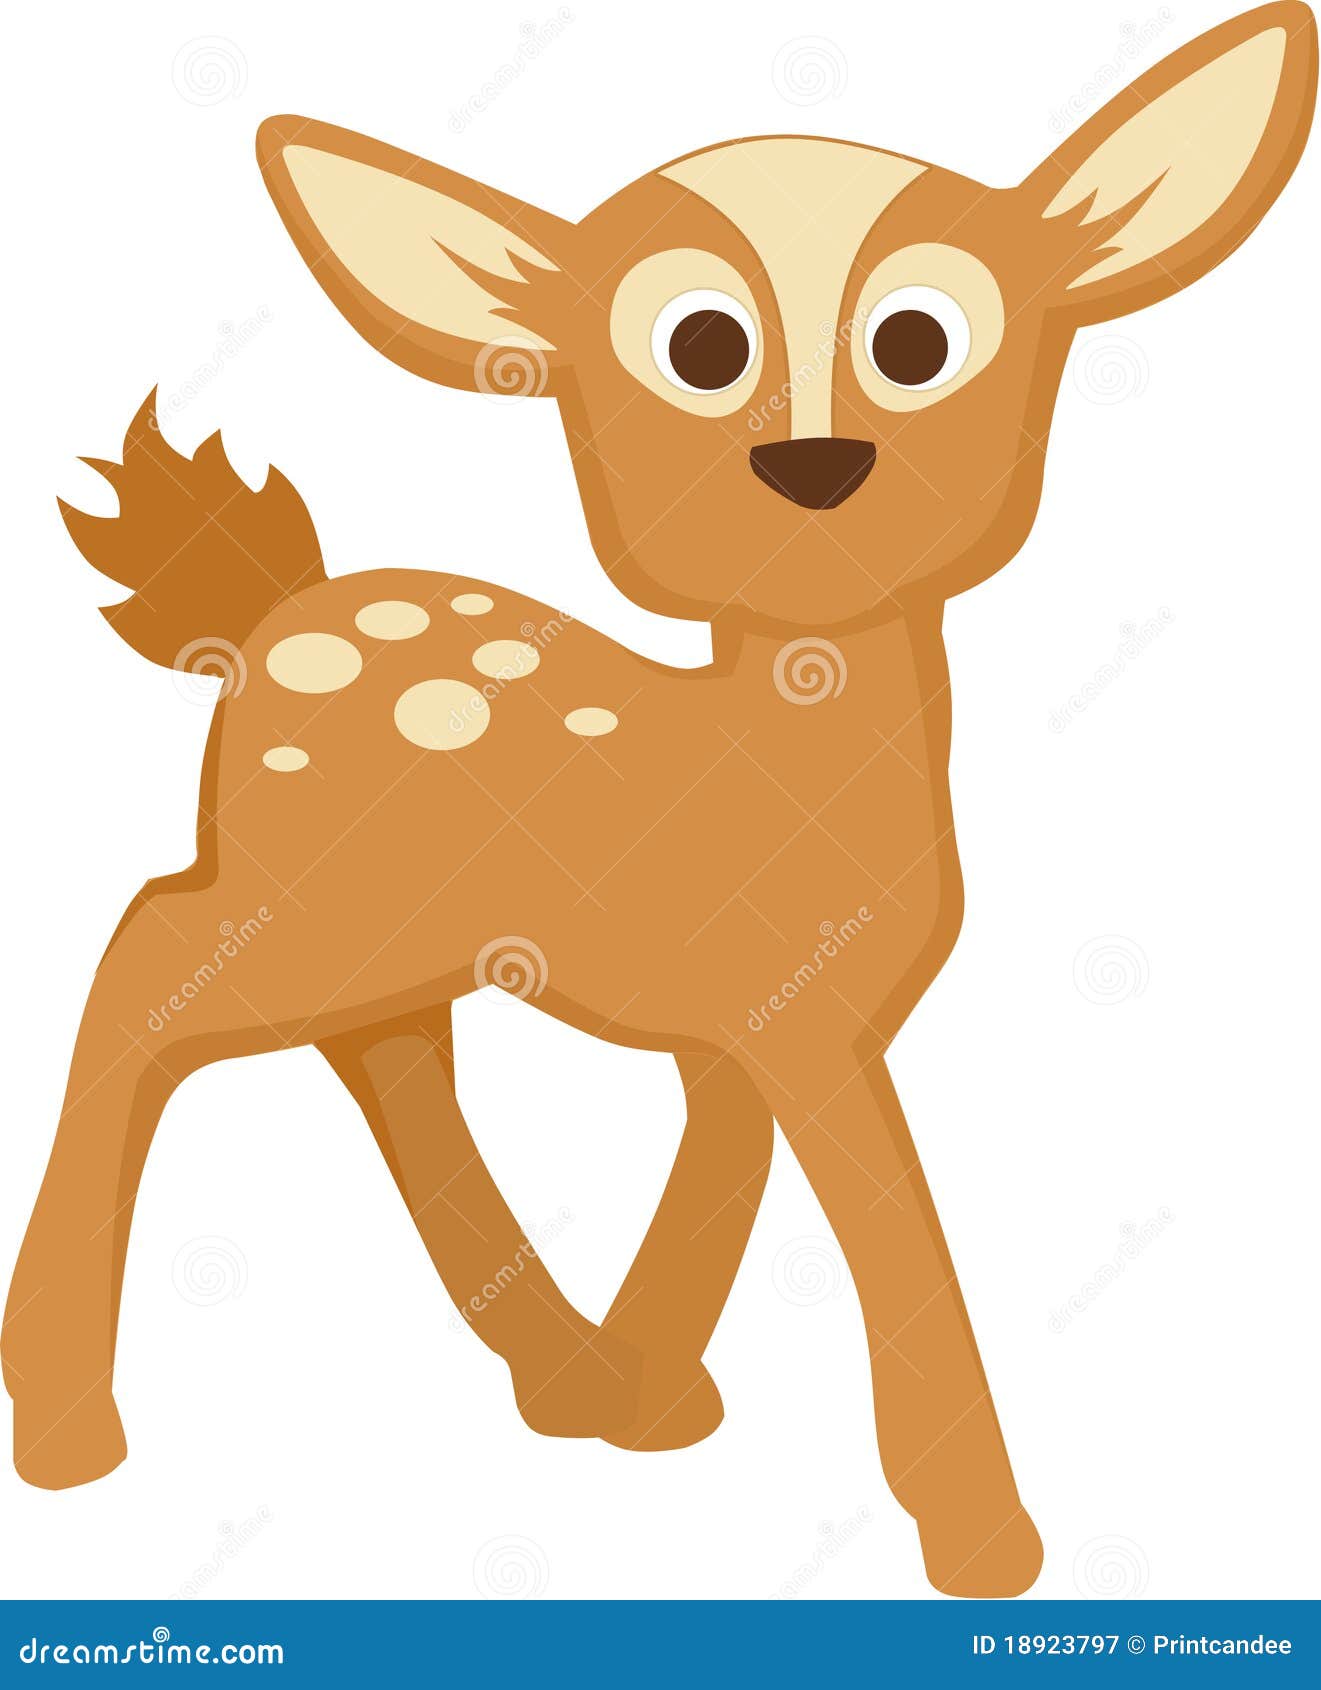 clip art baby deer - photo #14